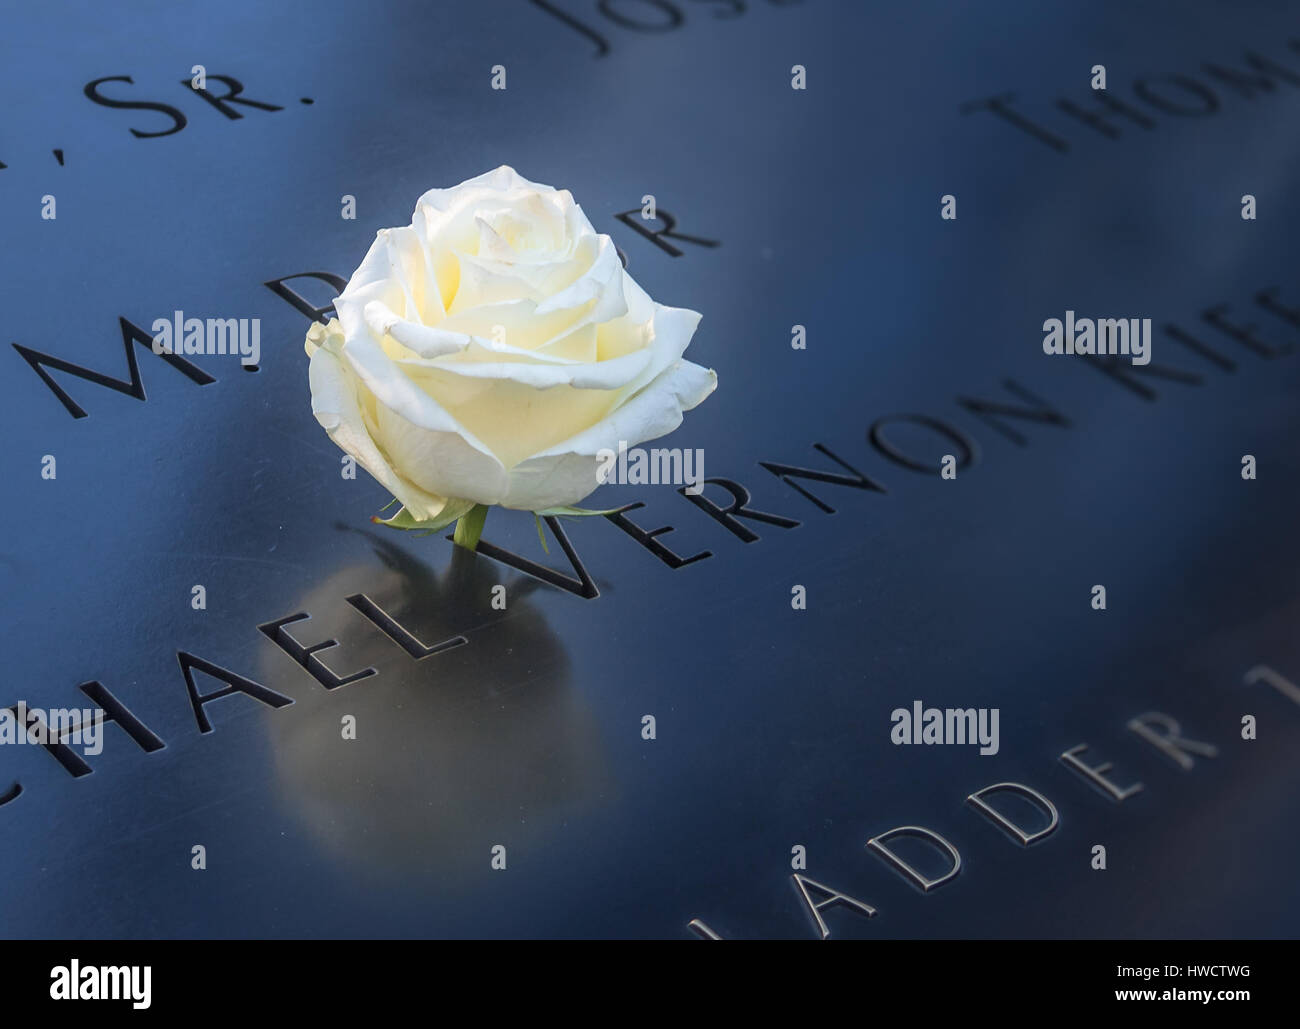 Compleanno rosa bianca a sinistra vicino a nome della vittima incisa sul parapetto in bronzo di 9/11 Memorial al World Trade Center Ground Zero - New York, Stati Uniti d'America Foto Stock